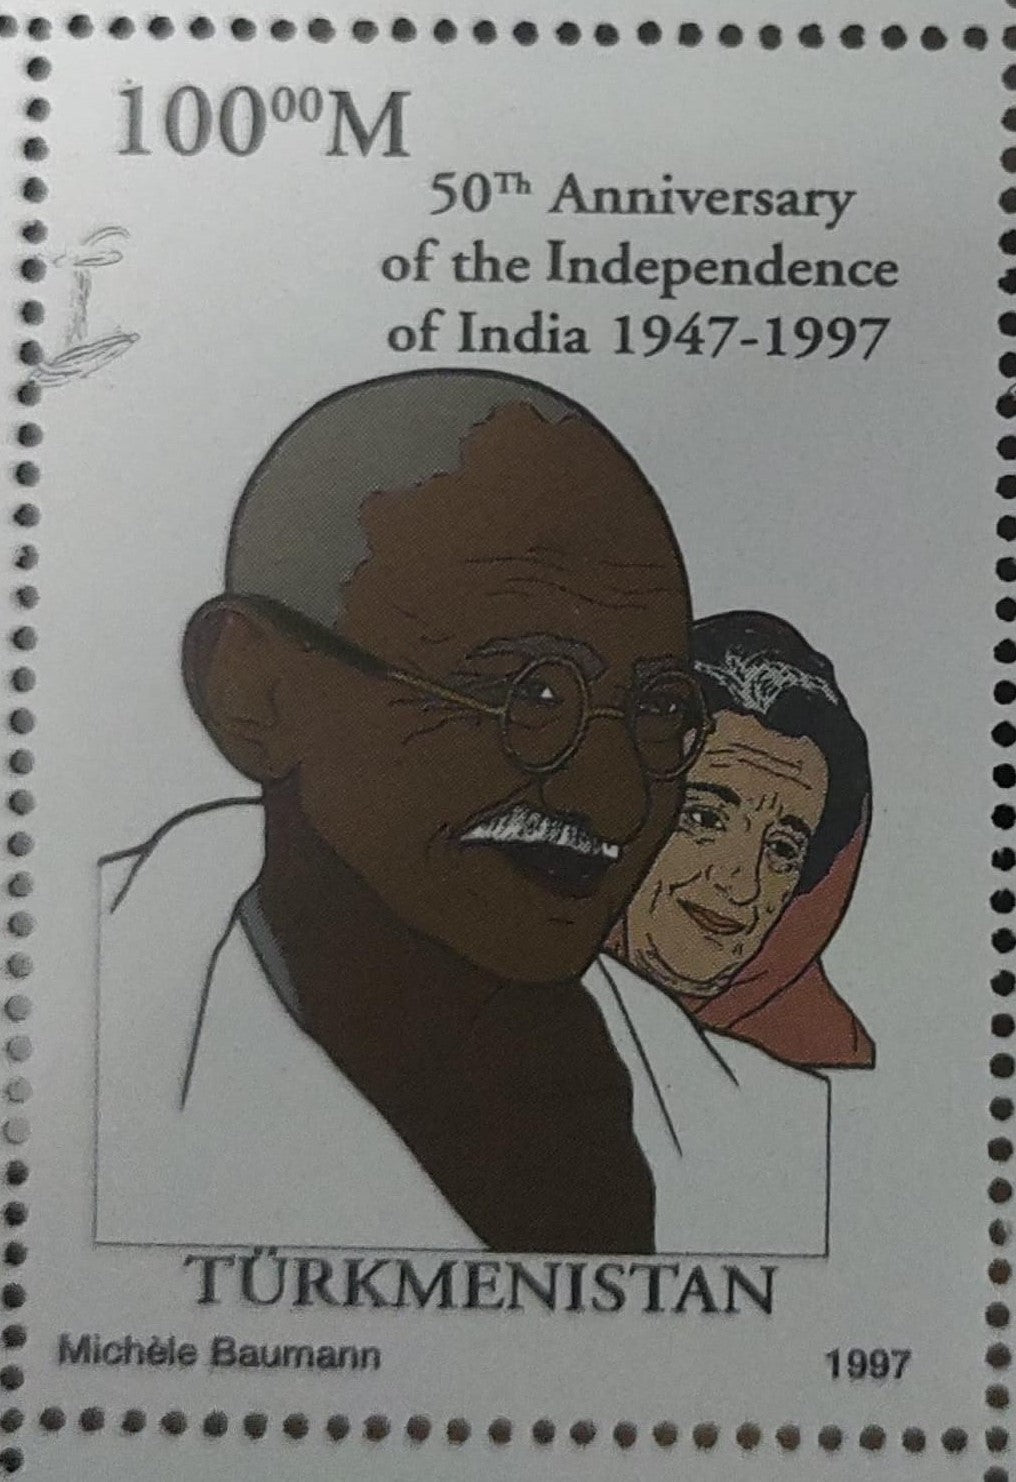 तुर्कमेनिस्तान गांधी जी 1997 जिसमें इंदिरा गांधी भी शामिल हैं- टिकट।